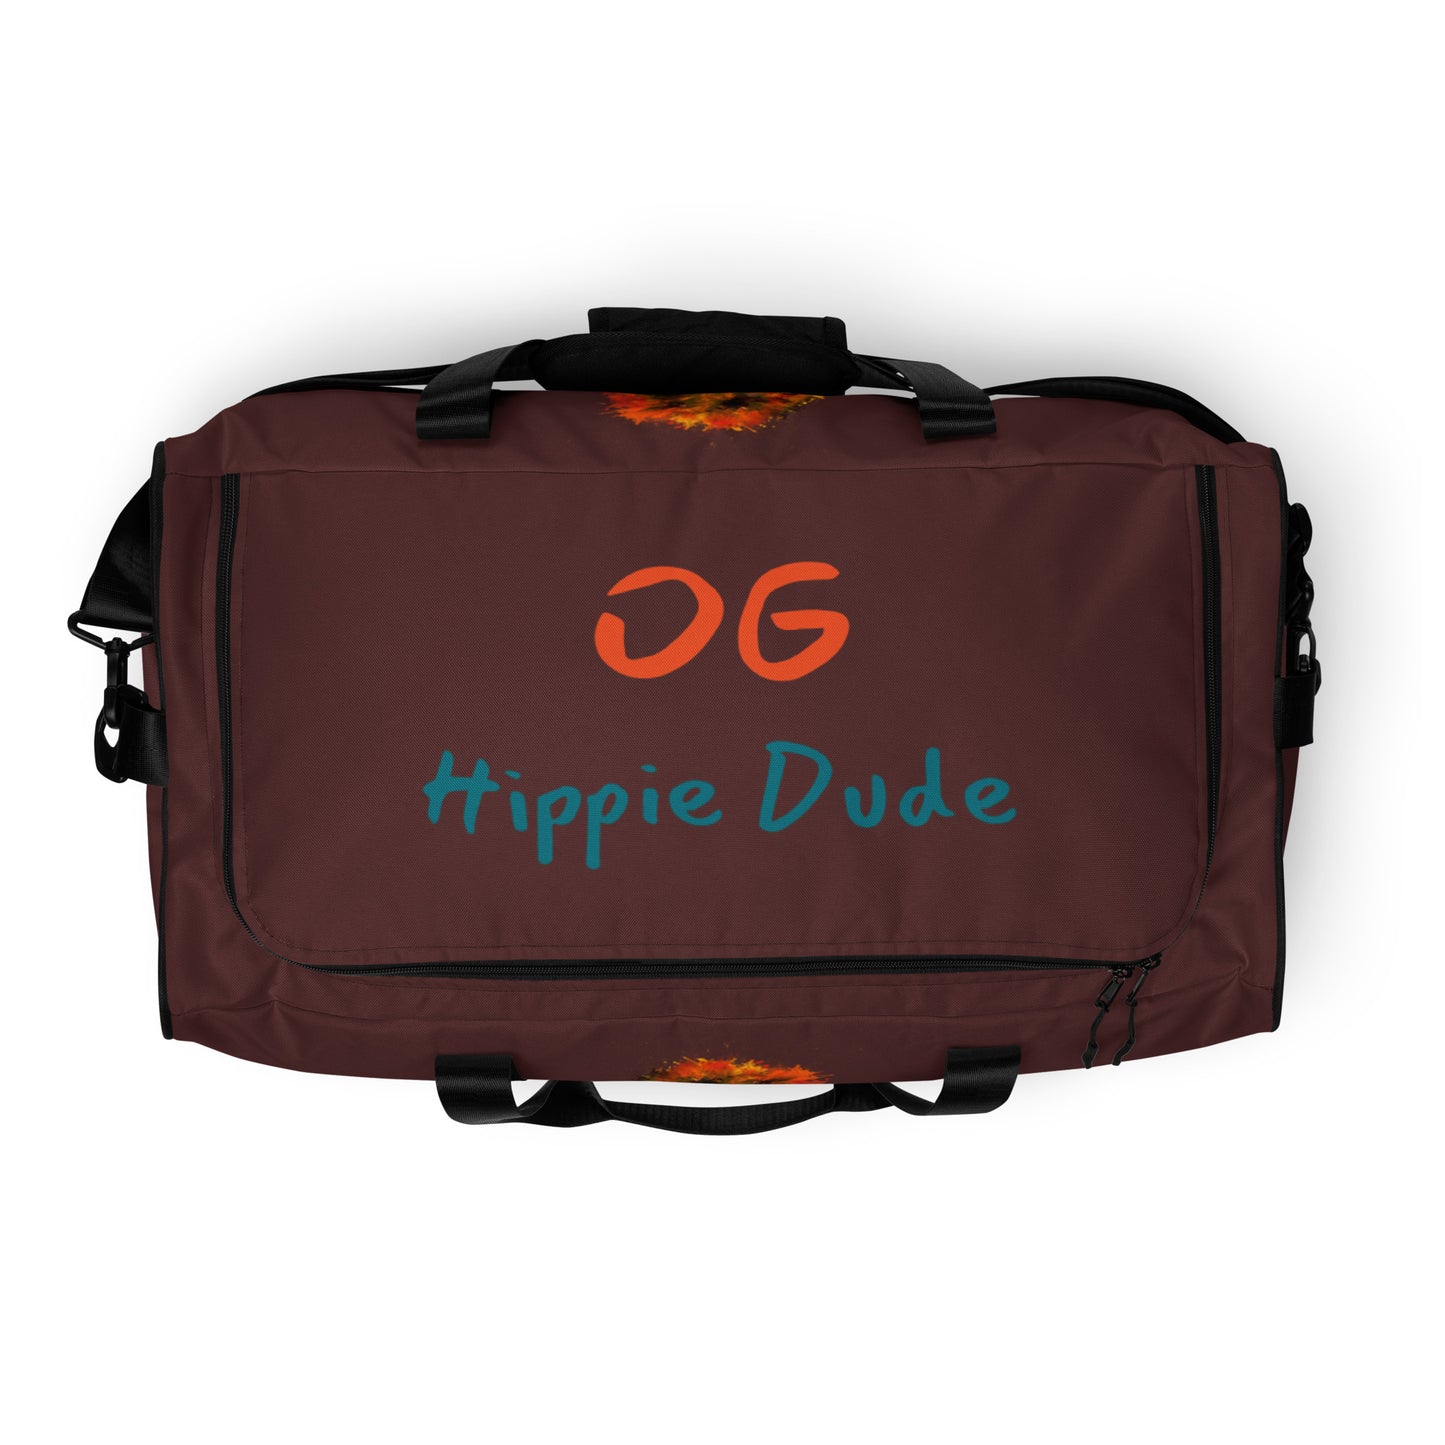 Auburn Duffle Bag - OG Hippie Dude